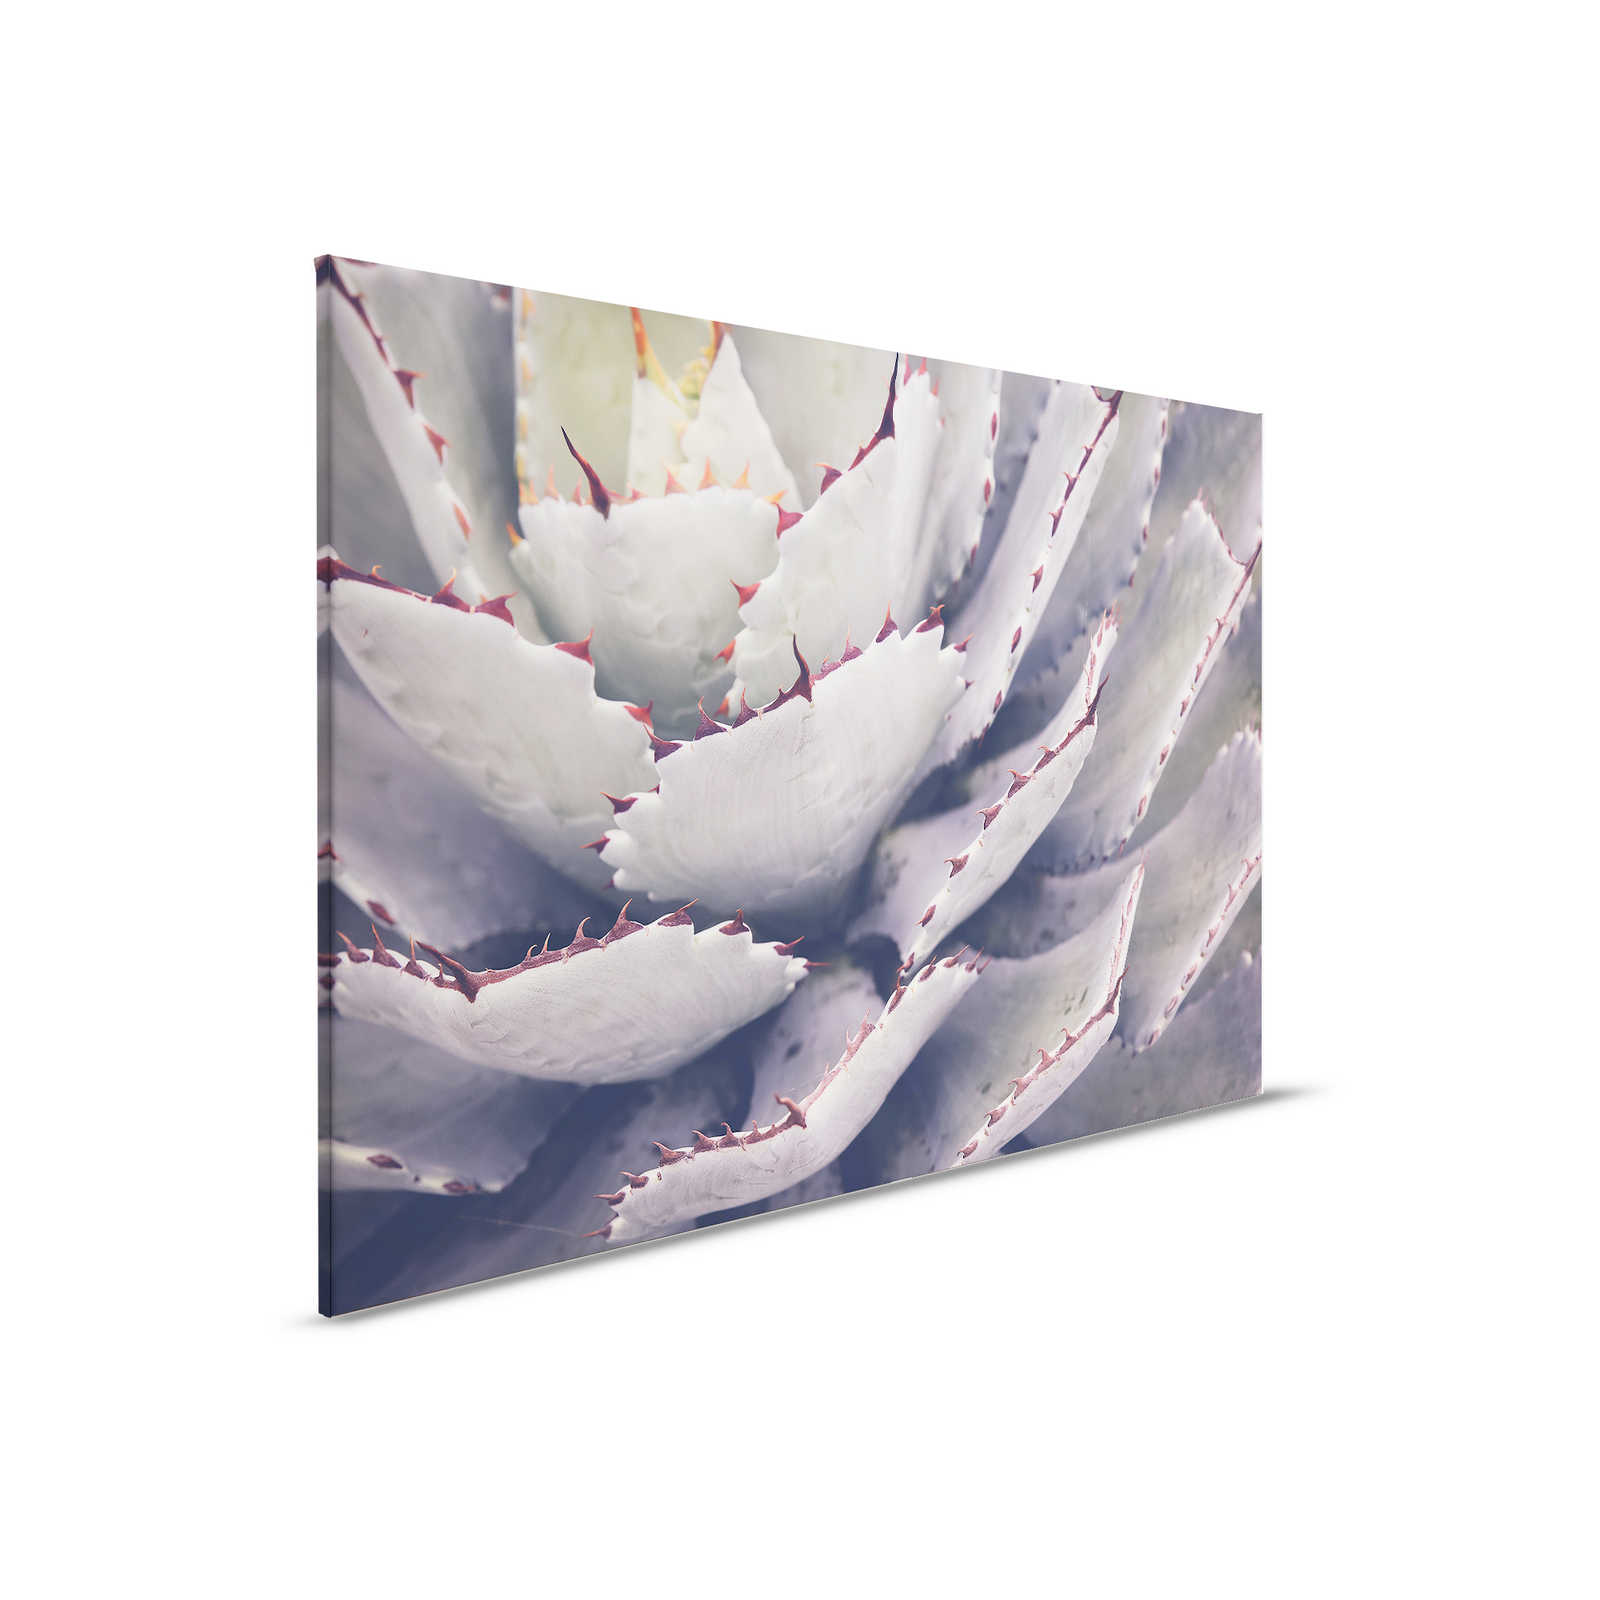 Canvas schilderij met close-up van een cactus - 0,90 m x 0,60 m
